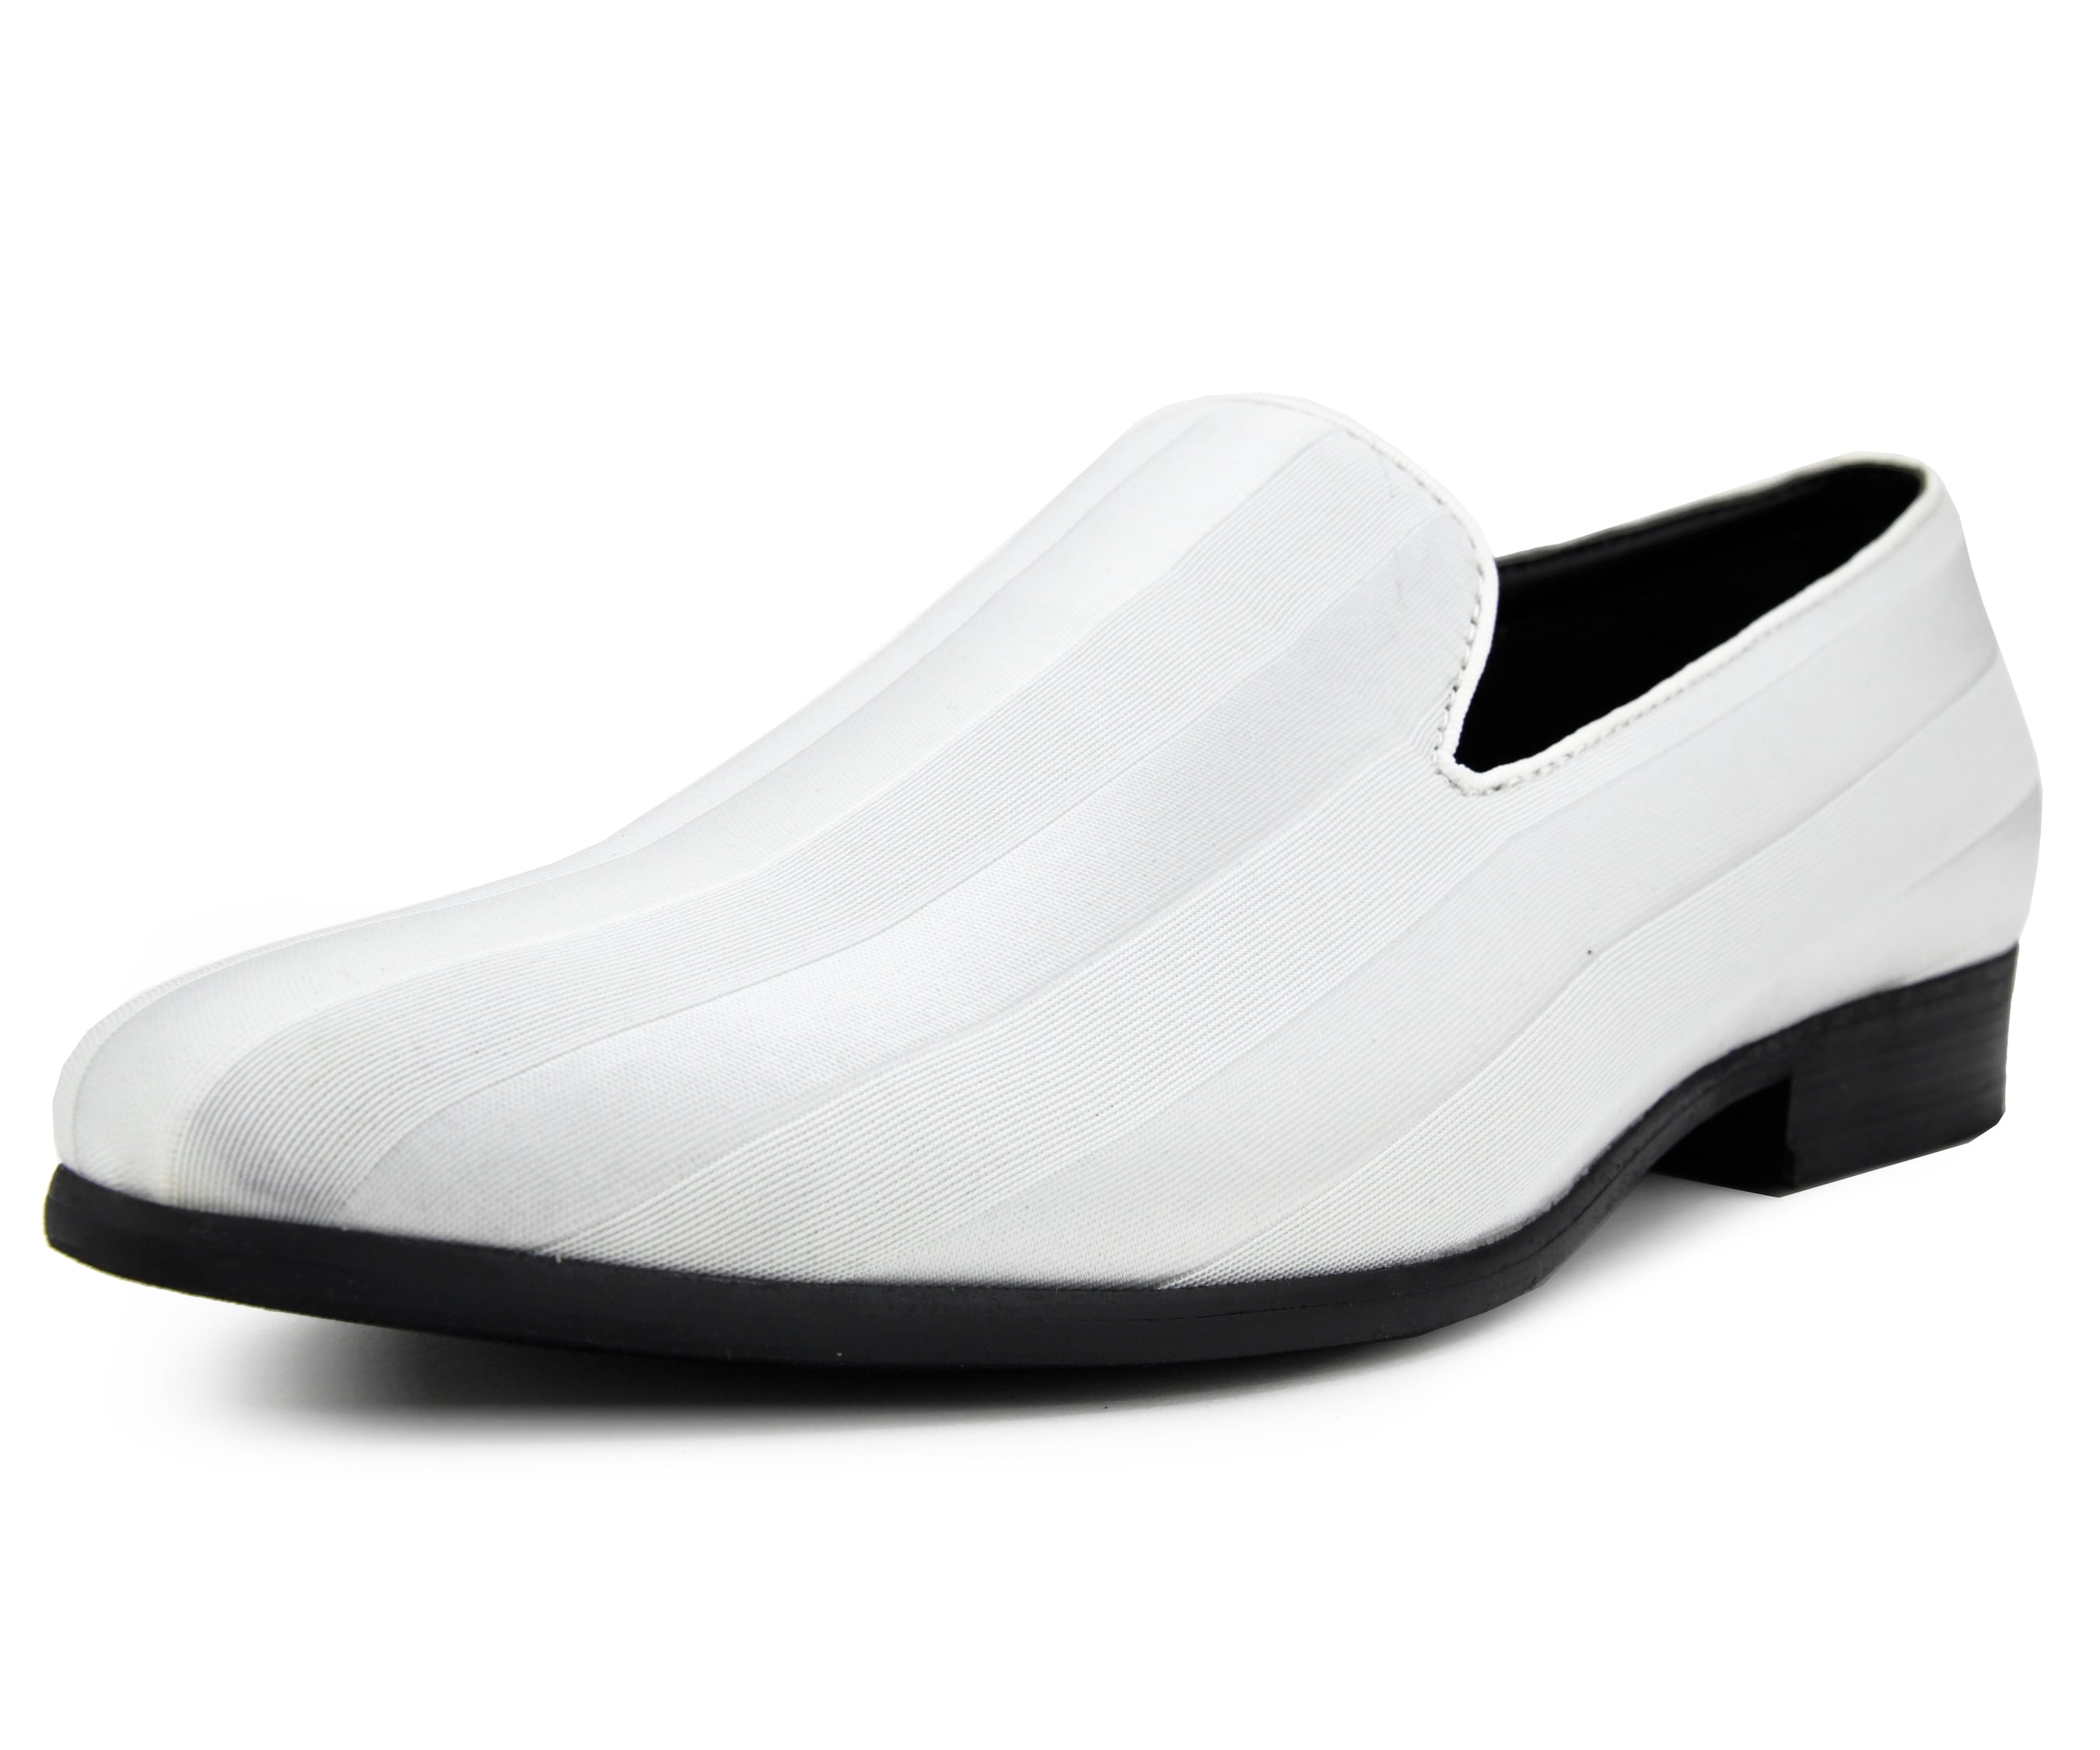 SANTIMON Mens Loafers Slip On Dress Driving Shoes for Men Velvet Moccasin Smoking Slipper with Bow 